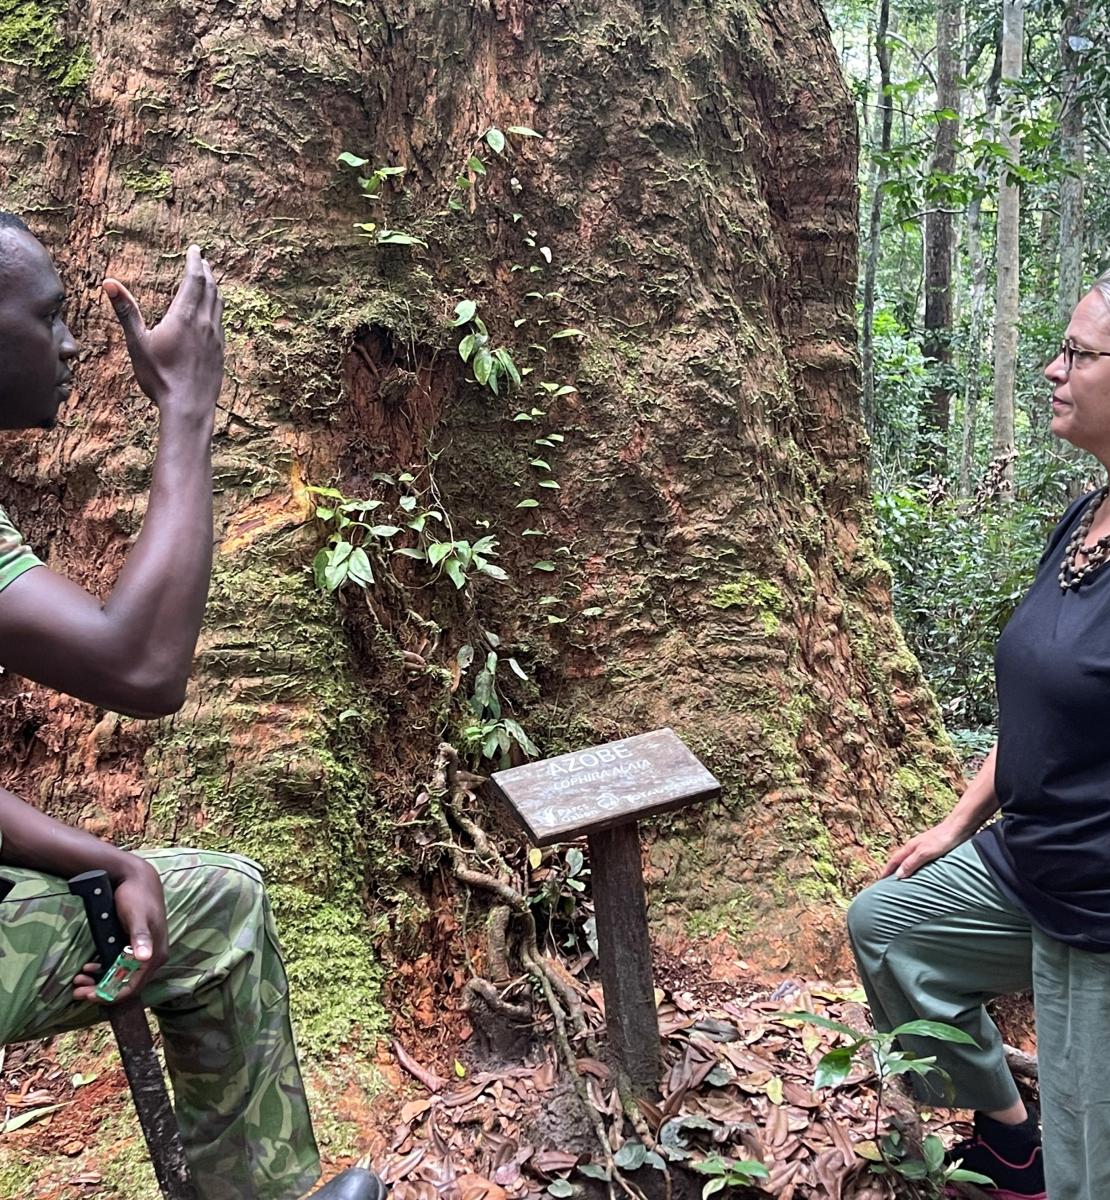 联合国驻加蓬协调员萨维纳·阿马萨里参观加蓬首都利伯维尔附近的拉蓬达·沃克植物园森林。